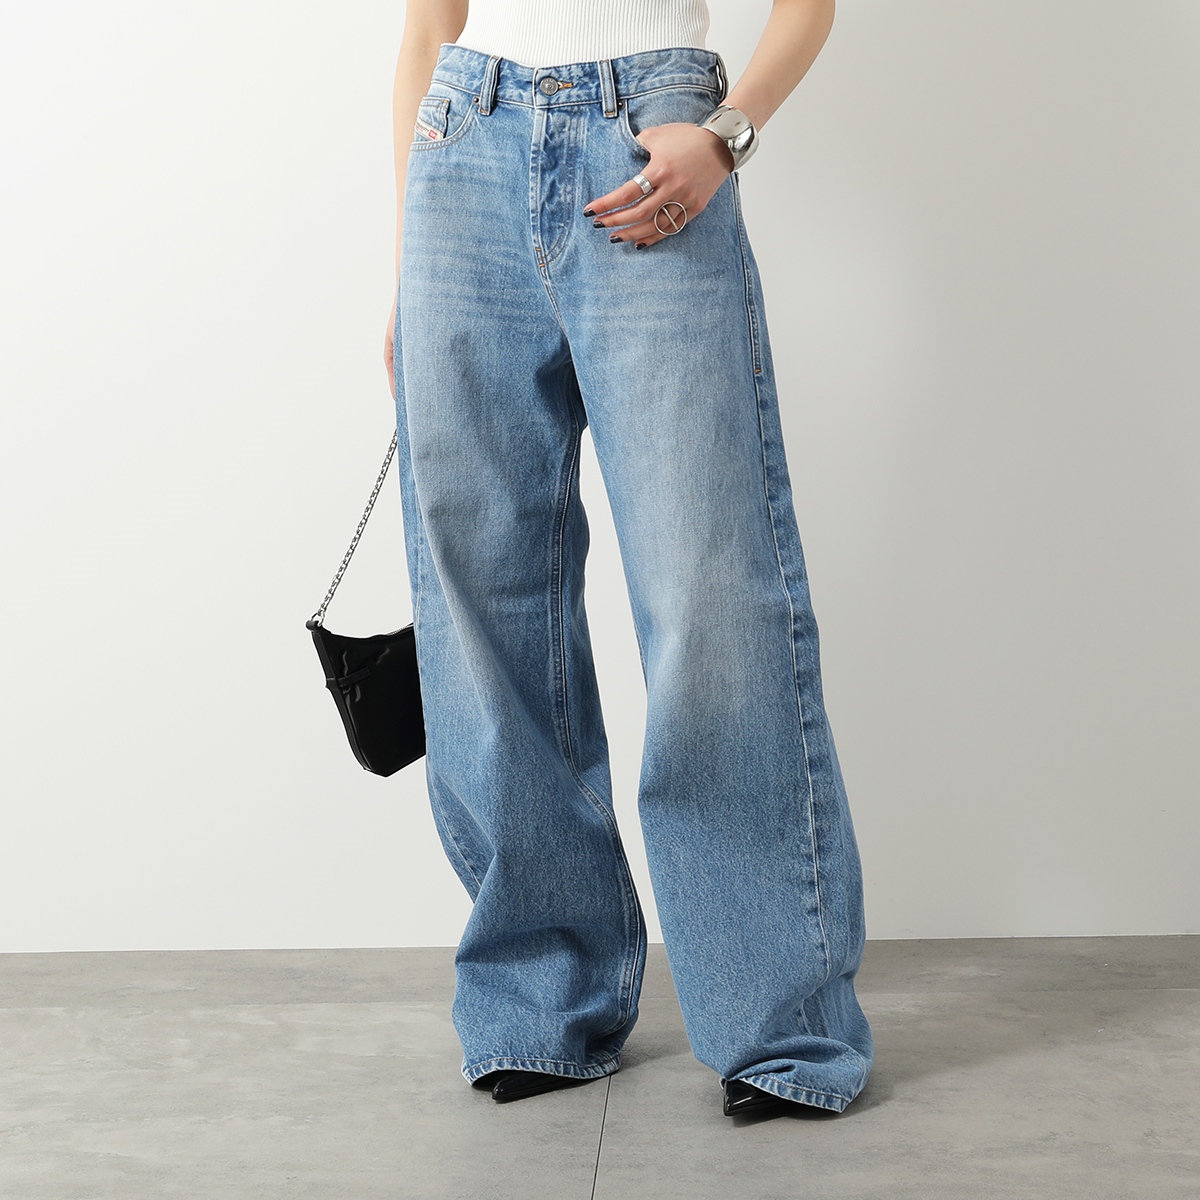 DIESEL ディーゼル ジーンズ Straight Jeans 1996 D-Sire 09i29 A06925 09I29 レディース ワイド  デニムパンツ ジーパンGパン 01